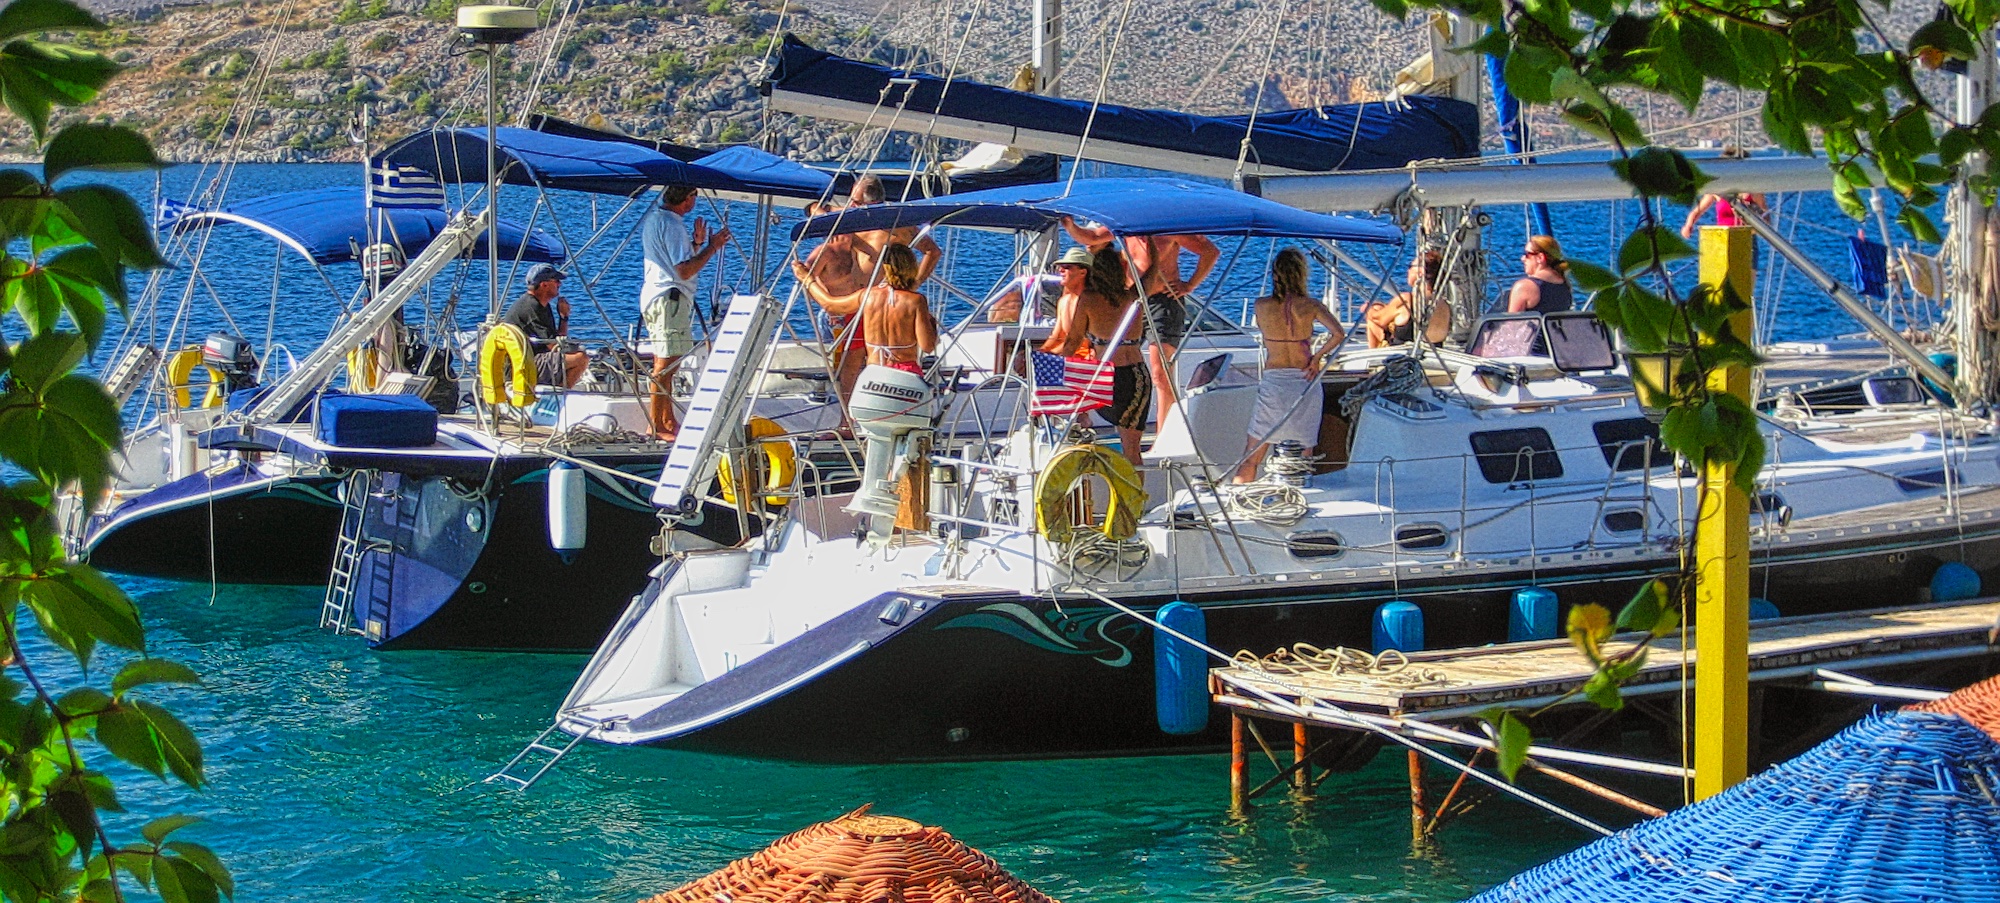 Turkey - Bozburun sailing raft-up